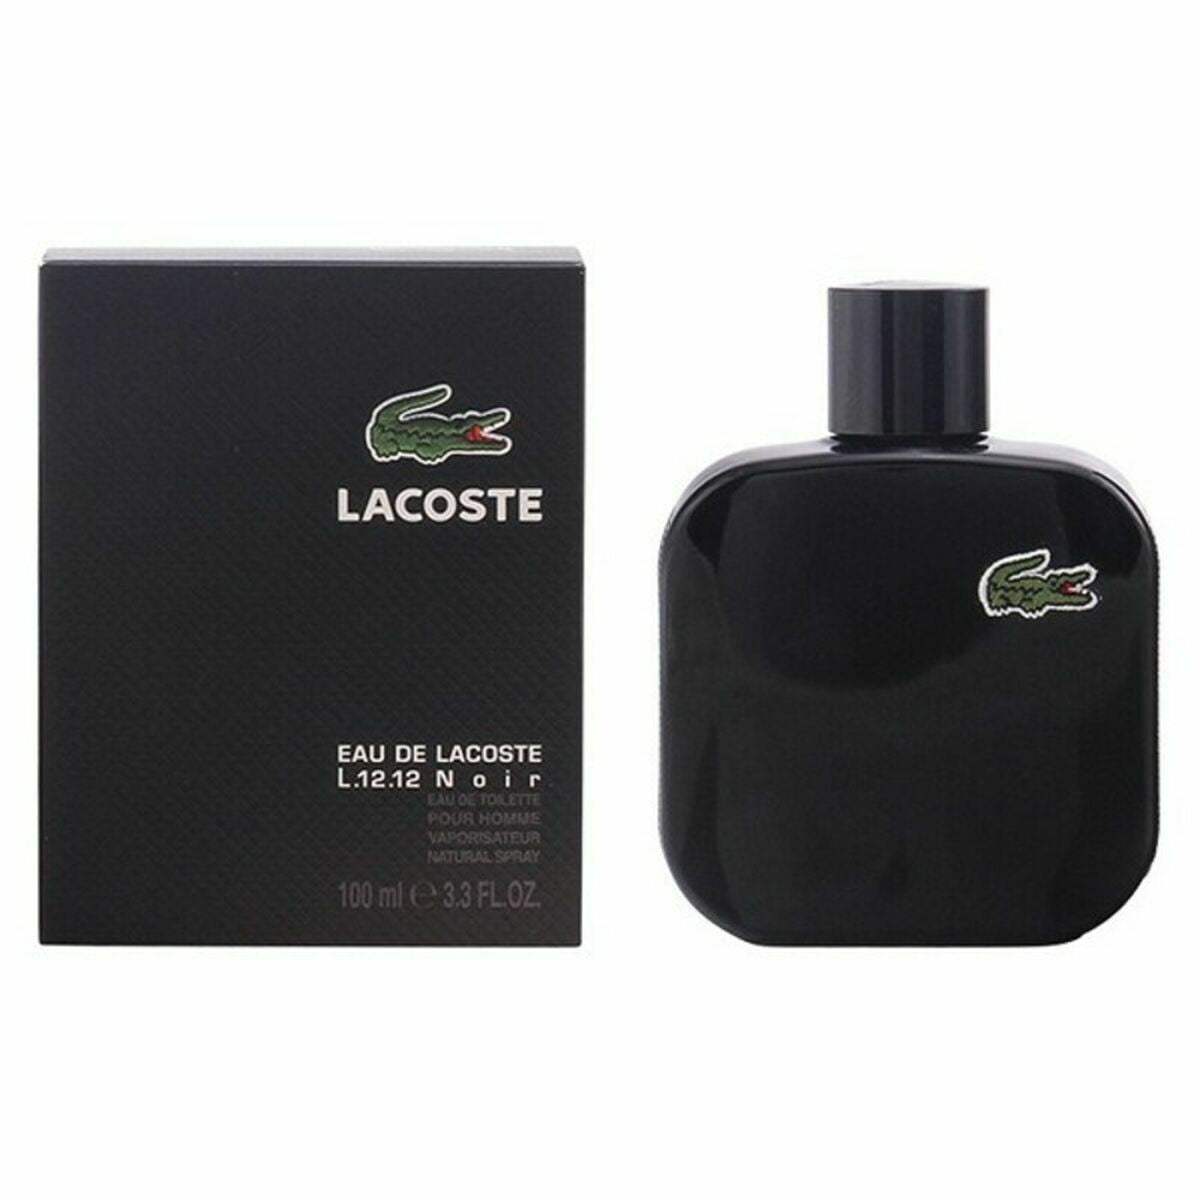 Parfum Homme Lacoste Eau de Lacoste L.12.12 Noir EDT EDT 100 ml - Lacoste - Jardin D'Eyden - jardindeyden.fr